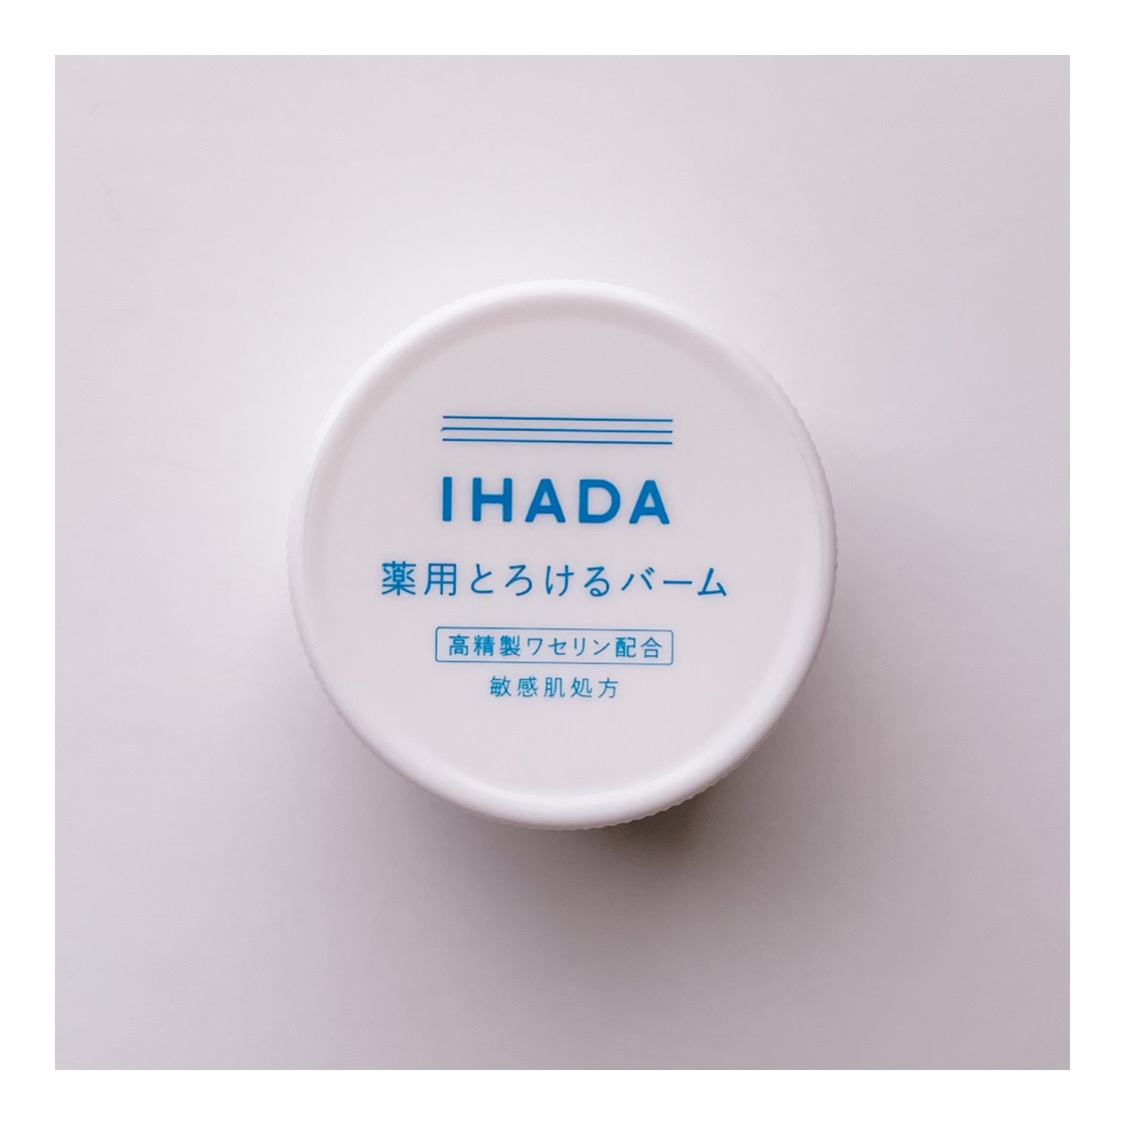 IHADA(イハダ) 薬用バームの良い点・メリットに関するtktkchanさんの口コミ画像1